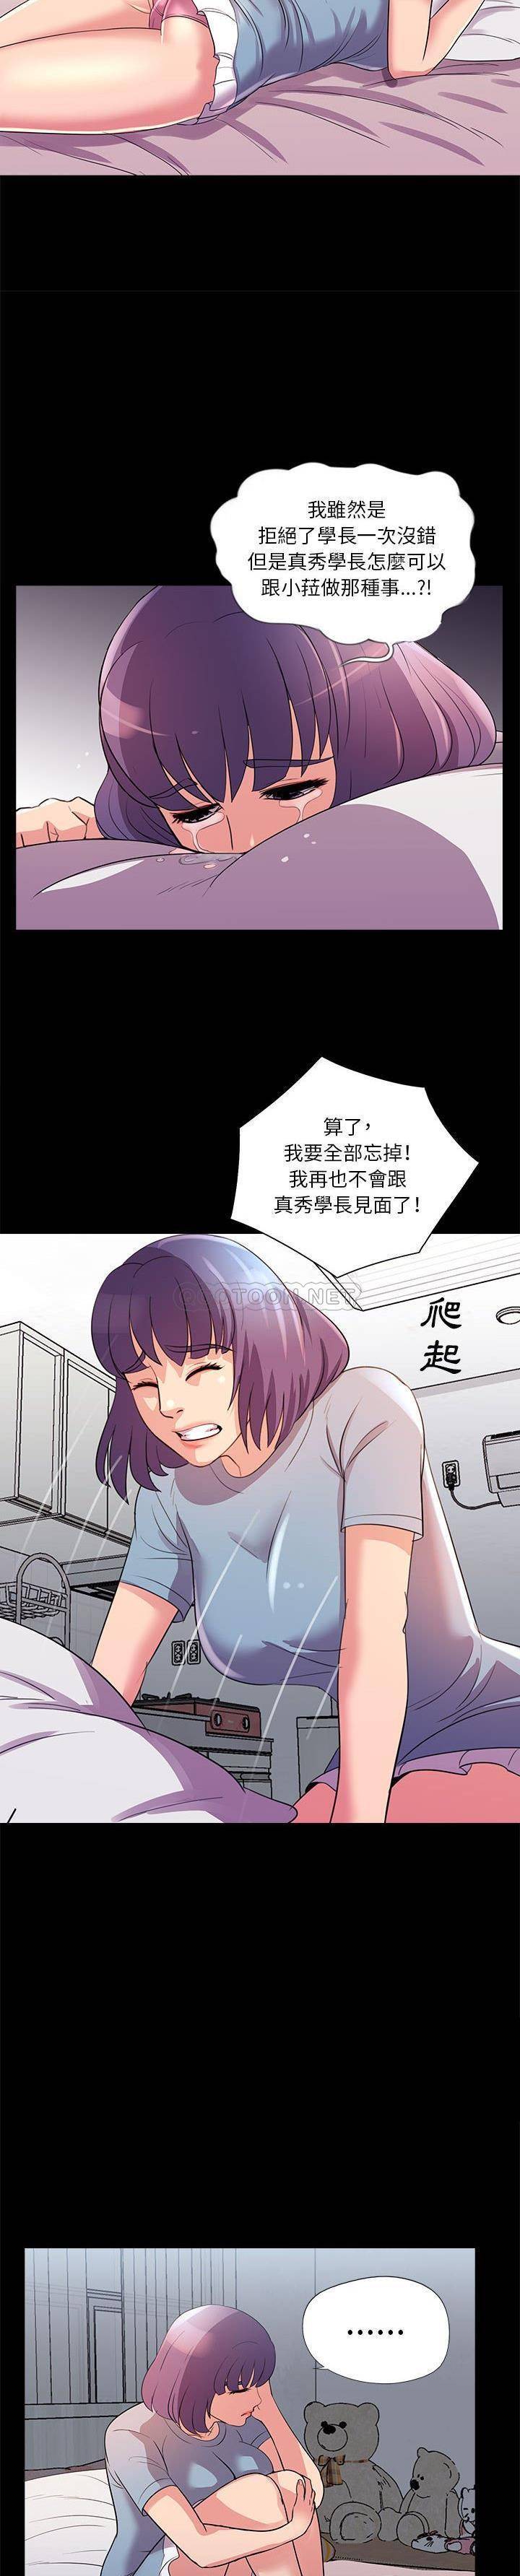 韩国污漫画 神秘復學生 第24话 18